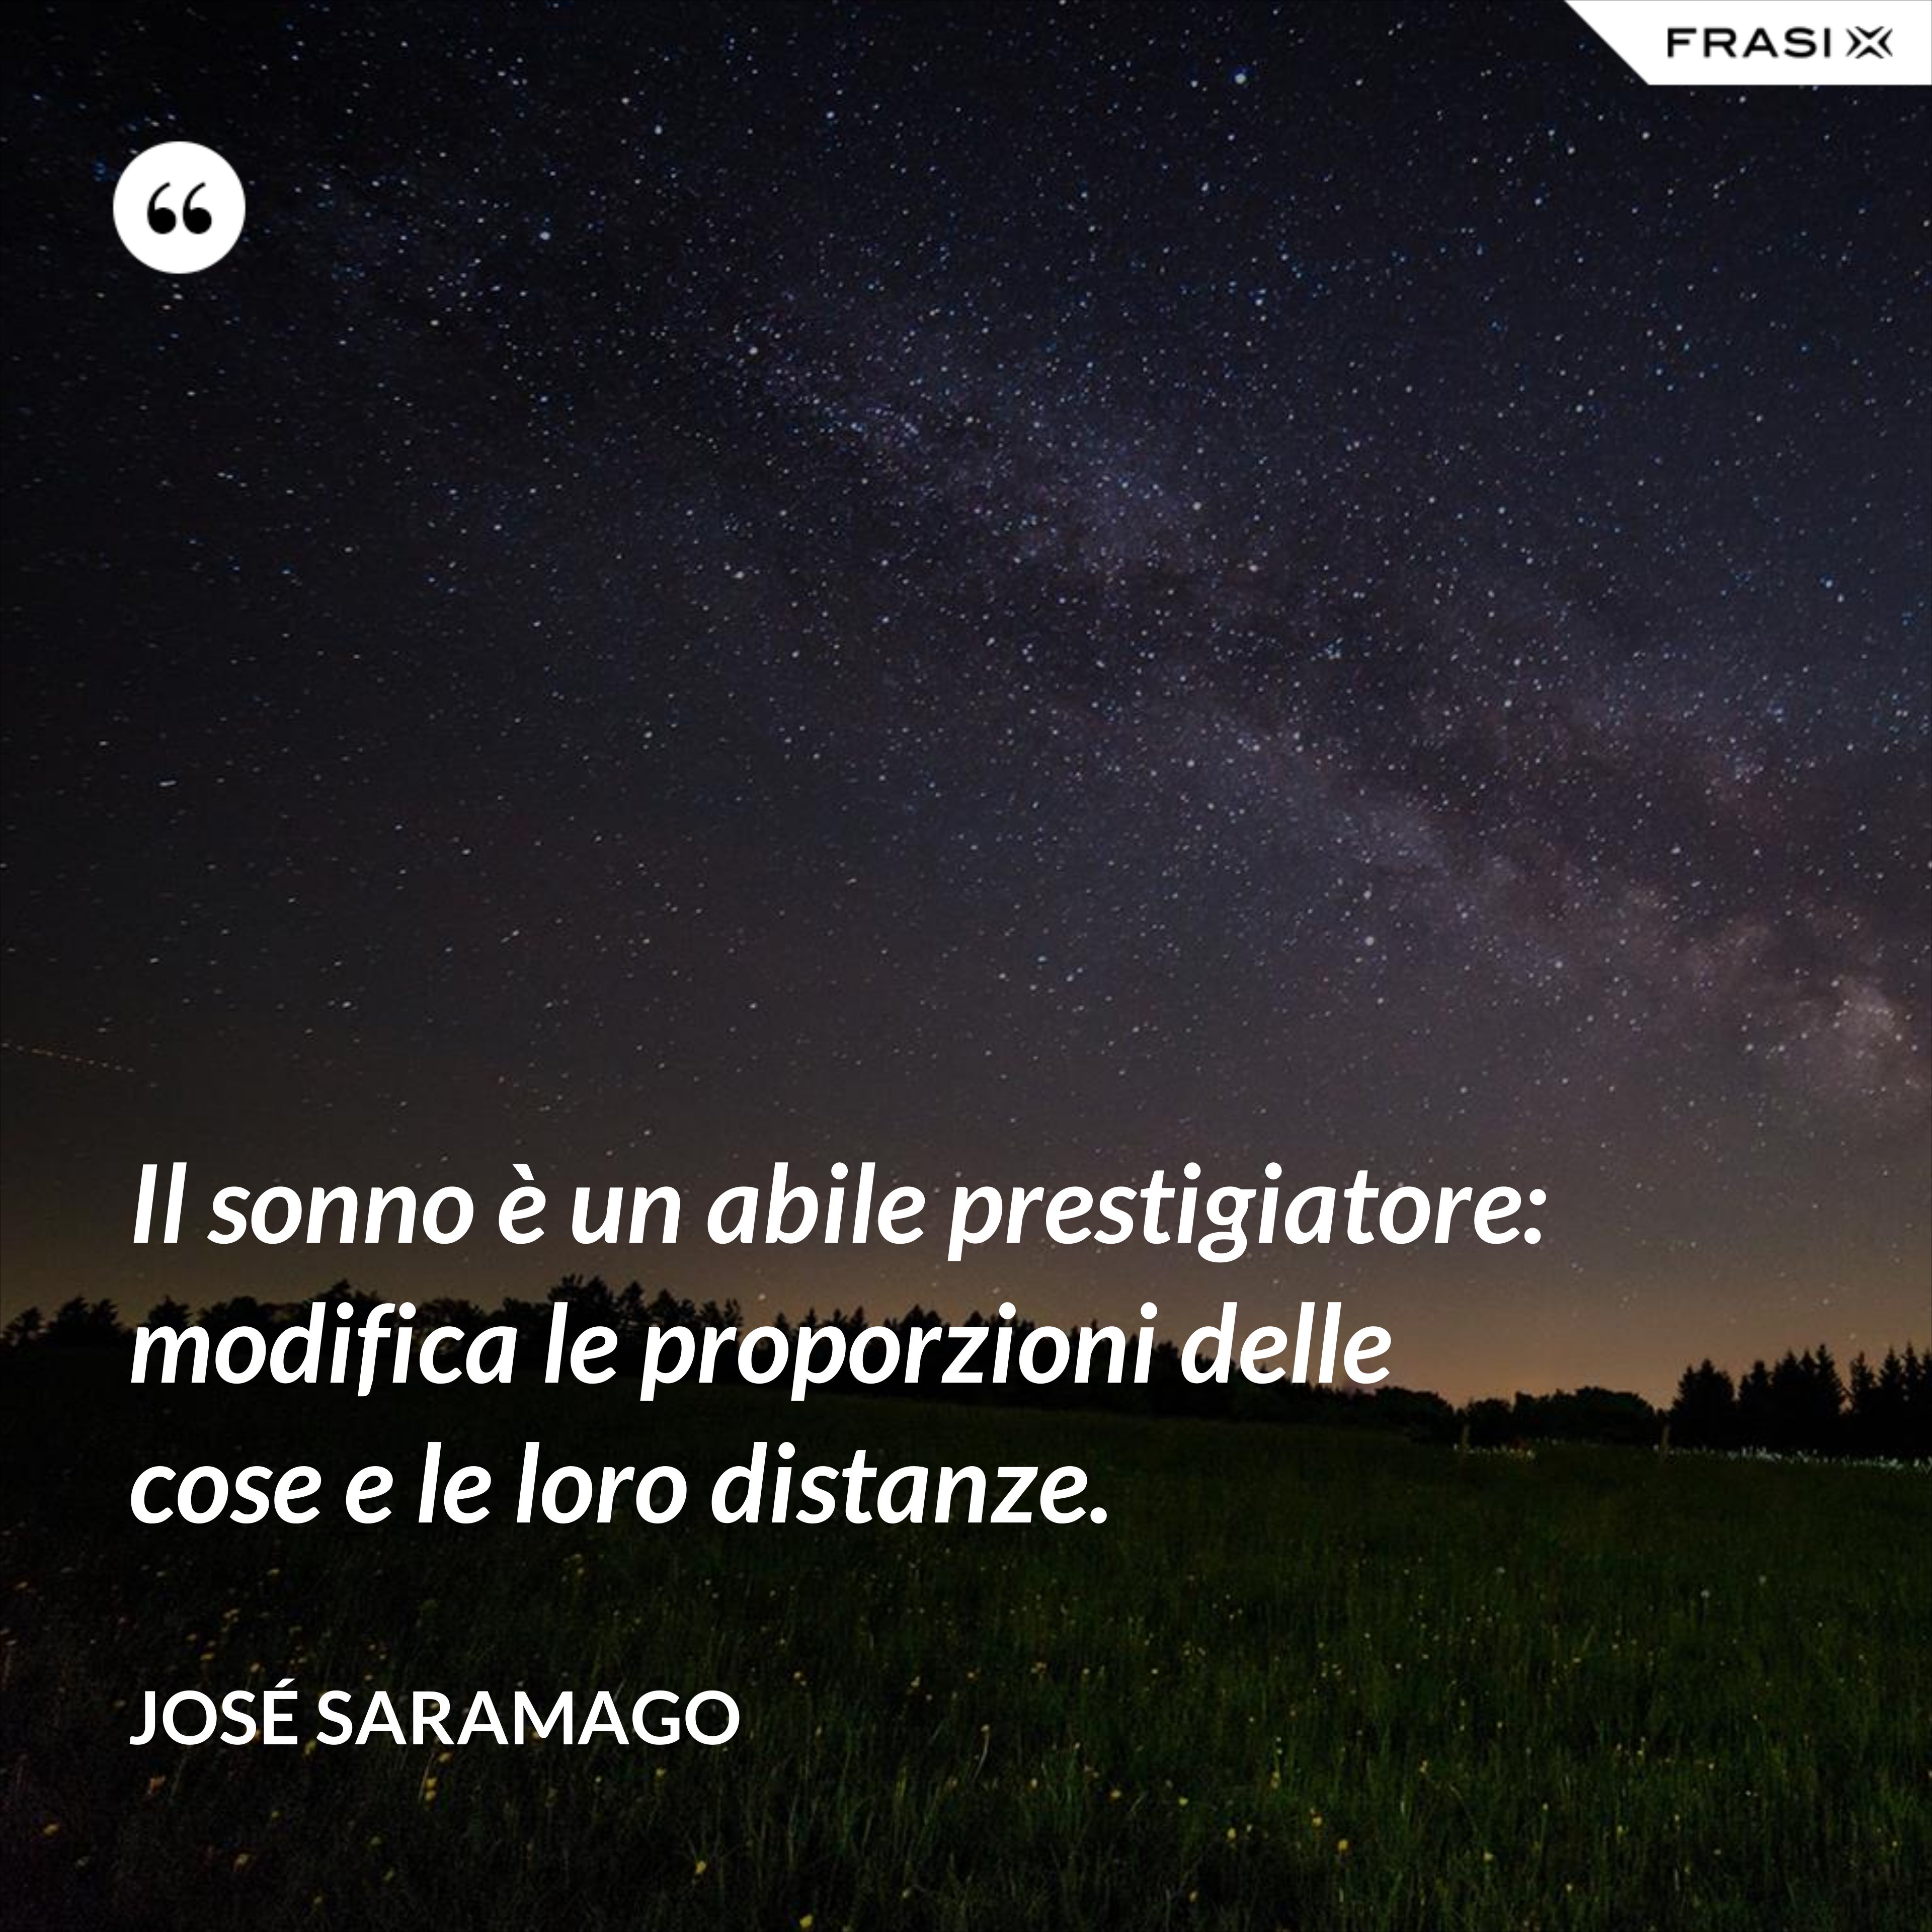 Il sonno è un abile prestigiatore: modifica le proporzioni delle cose e le loro distanze. - José Saramago